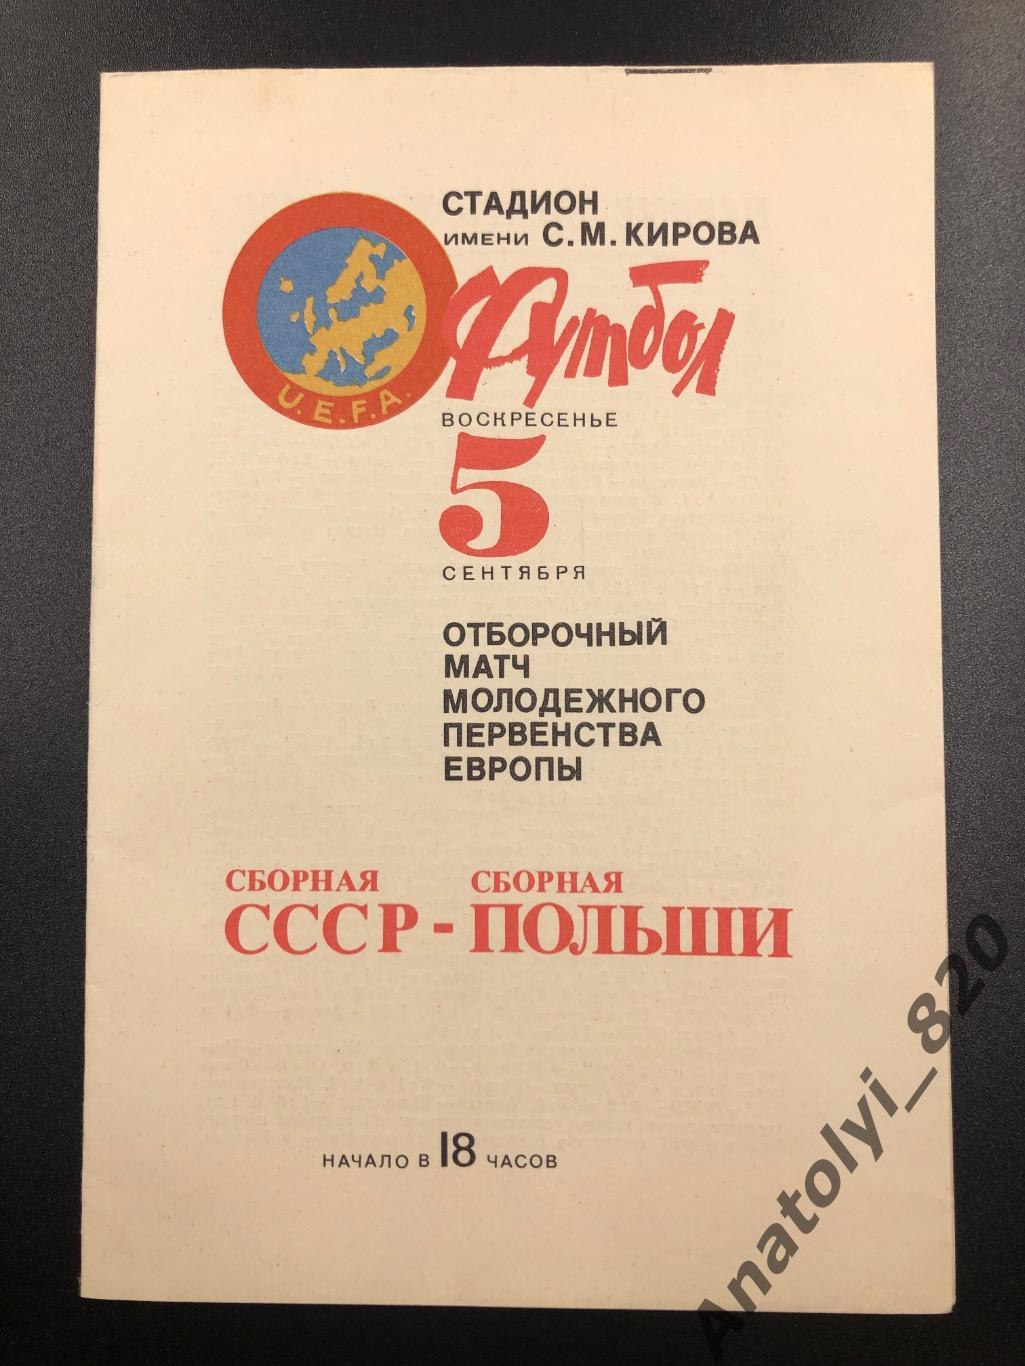 Сборная СССР - сборная Польши, 05.09.1982